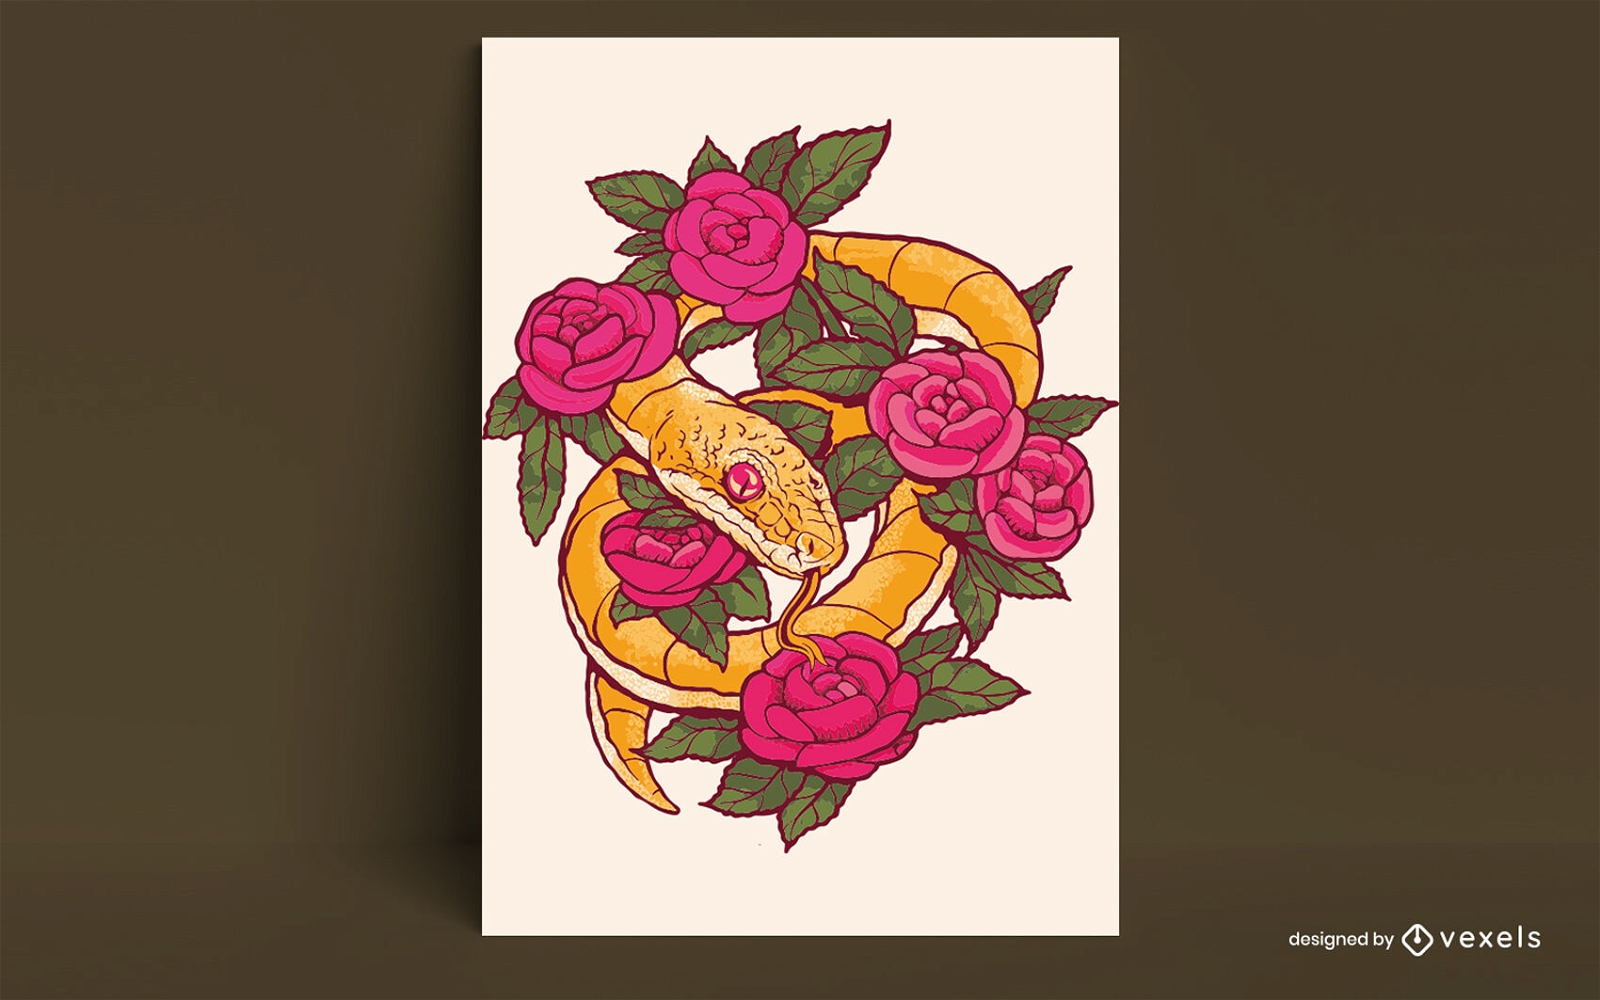 Schlangen- und Blumentätowierungsplakatdesign